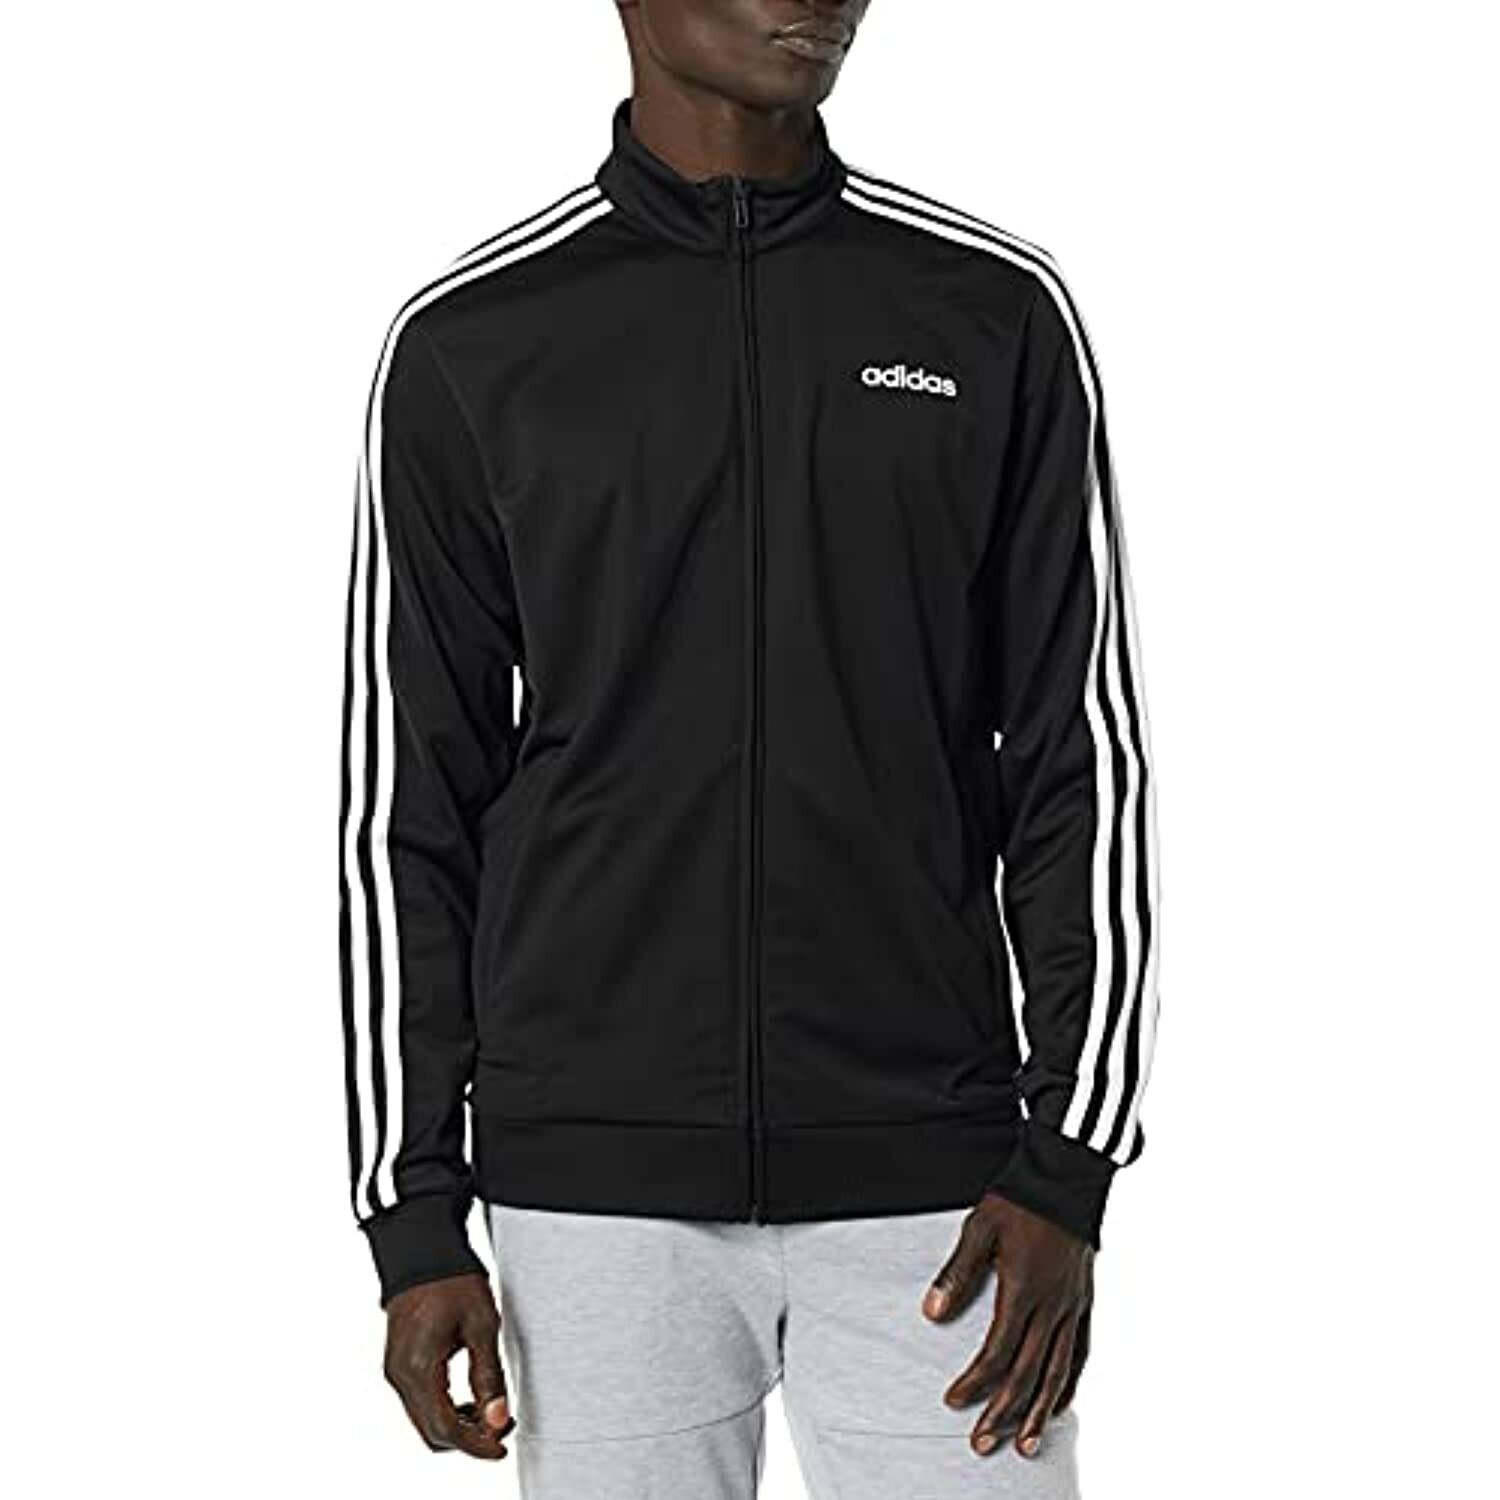 Adidas Track Jacket Black DQ3070, Size Large | eBay